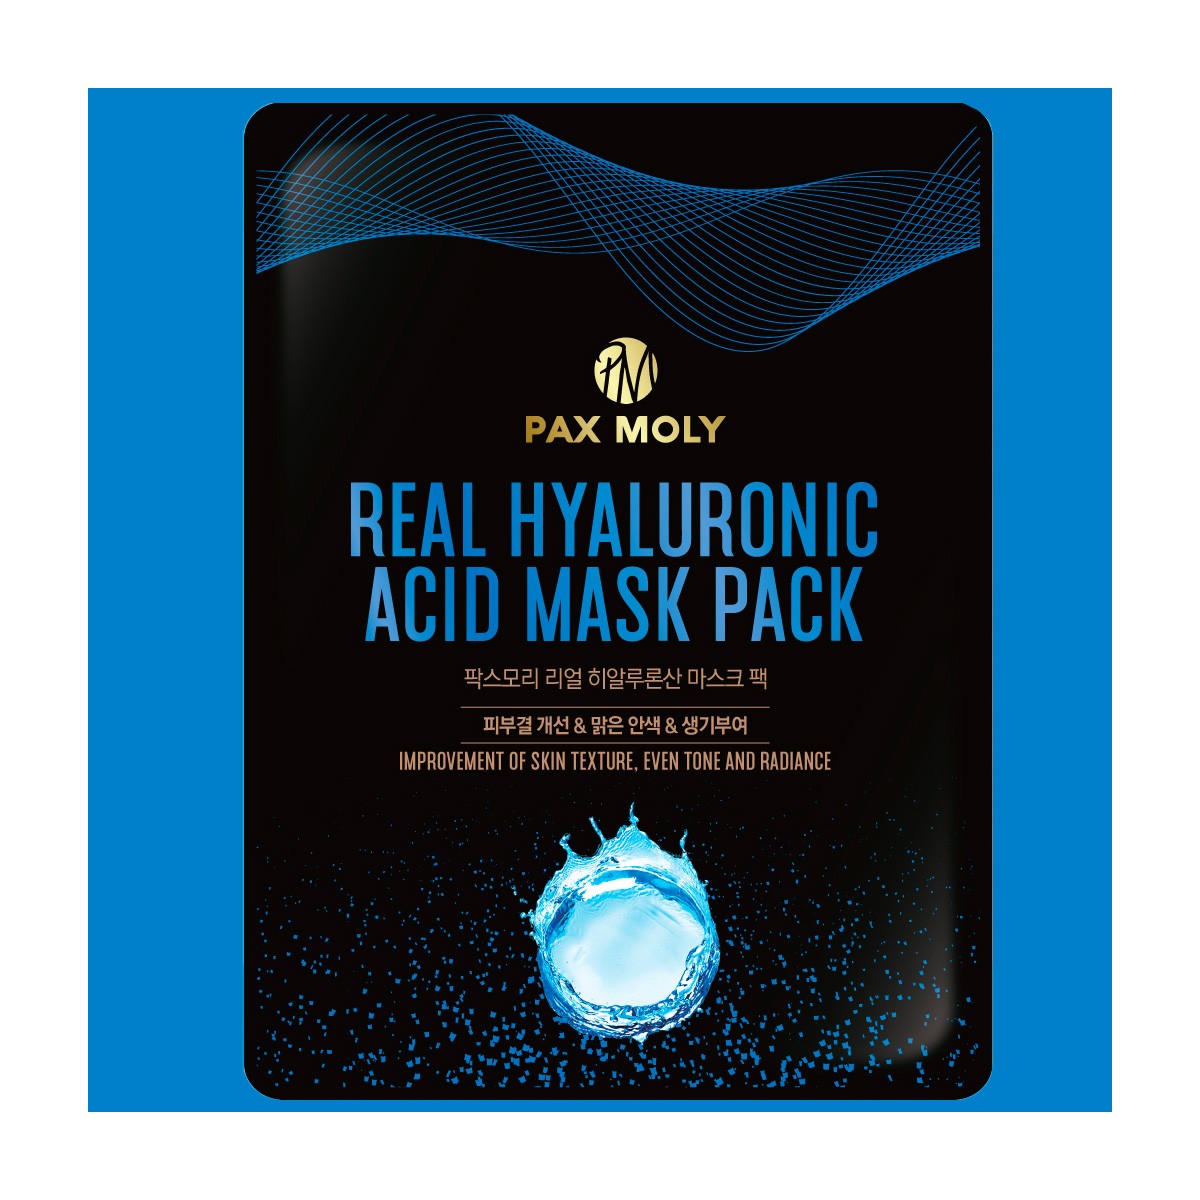 Mascarillas Coreanas de Hoja al mejor precio: PAX Moly Real Hyaluronic Mask Pack - Hidrata y rellena la piel de PAX MOLY en Skin Thinks - Piel Seca